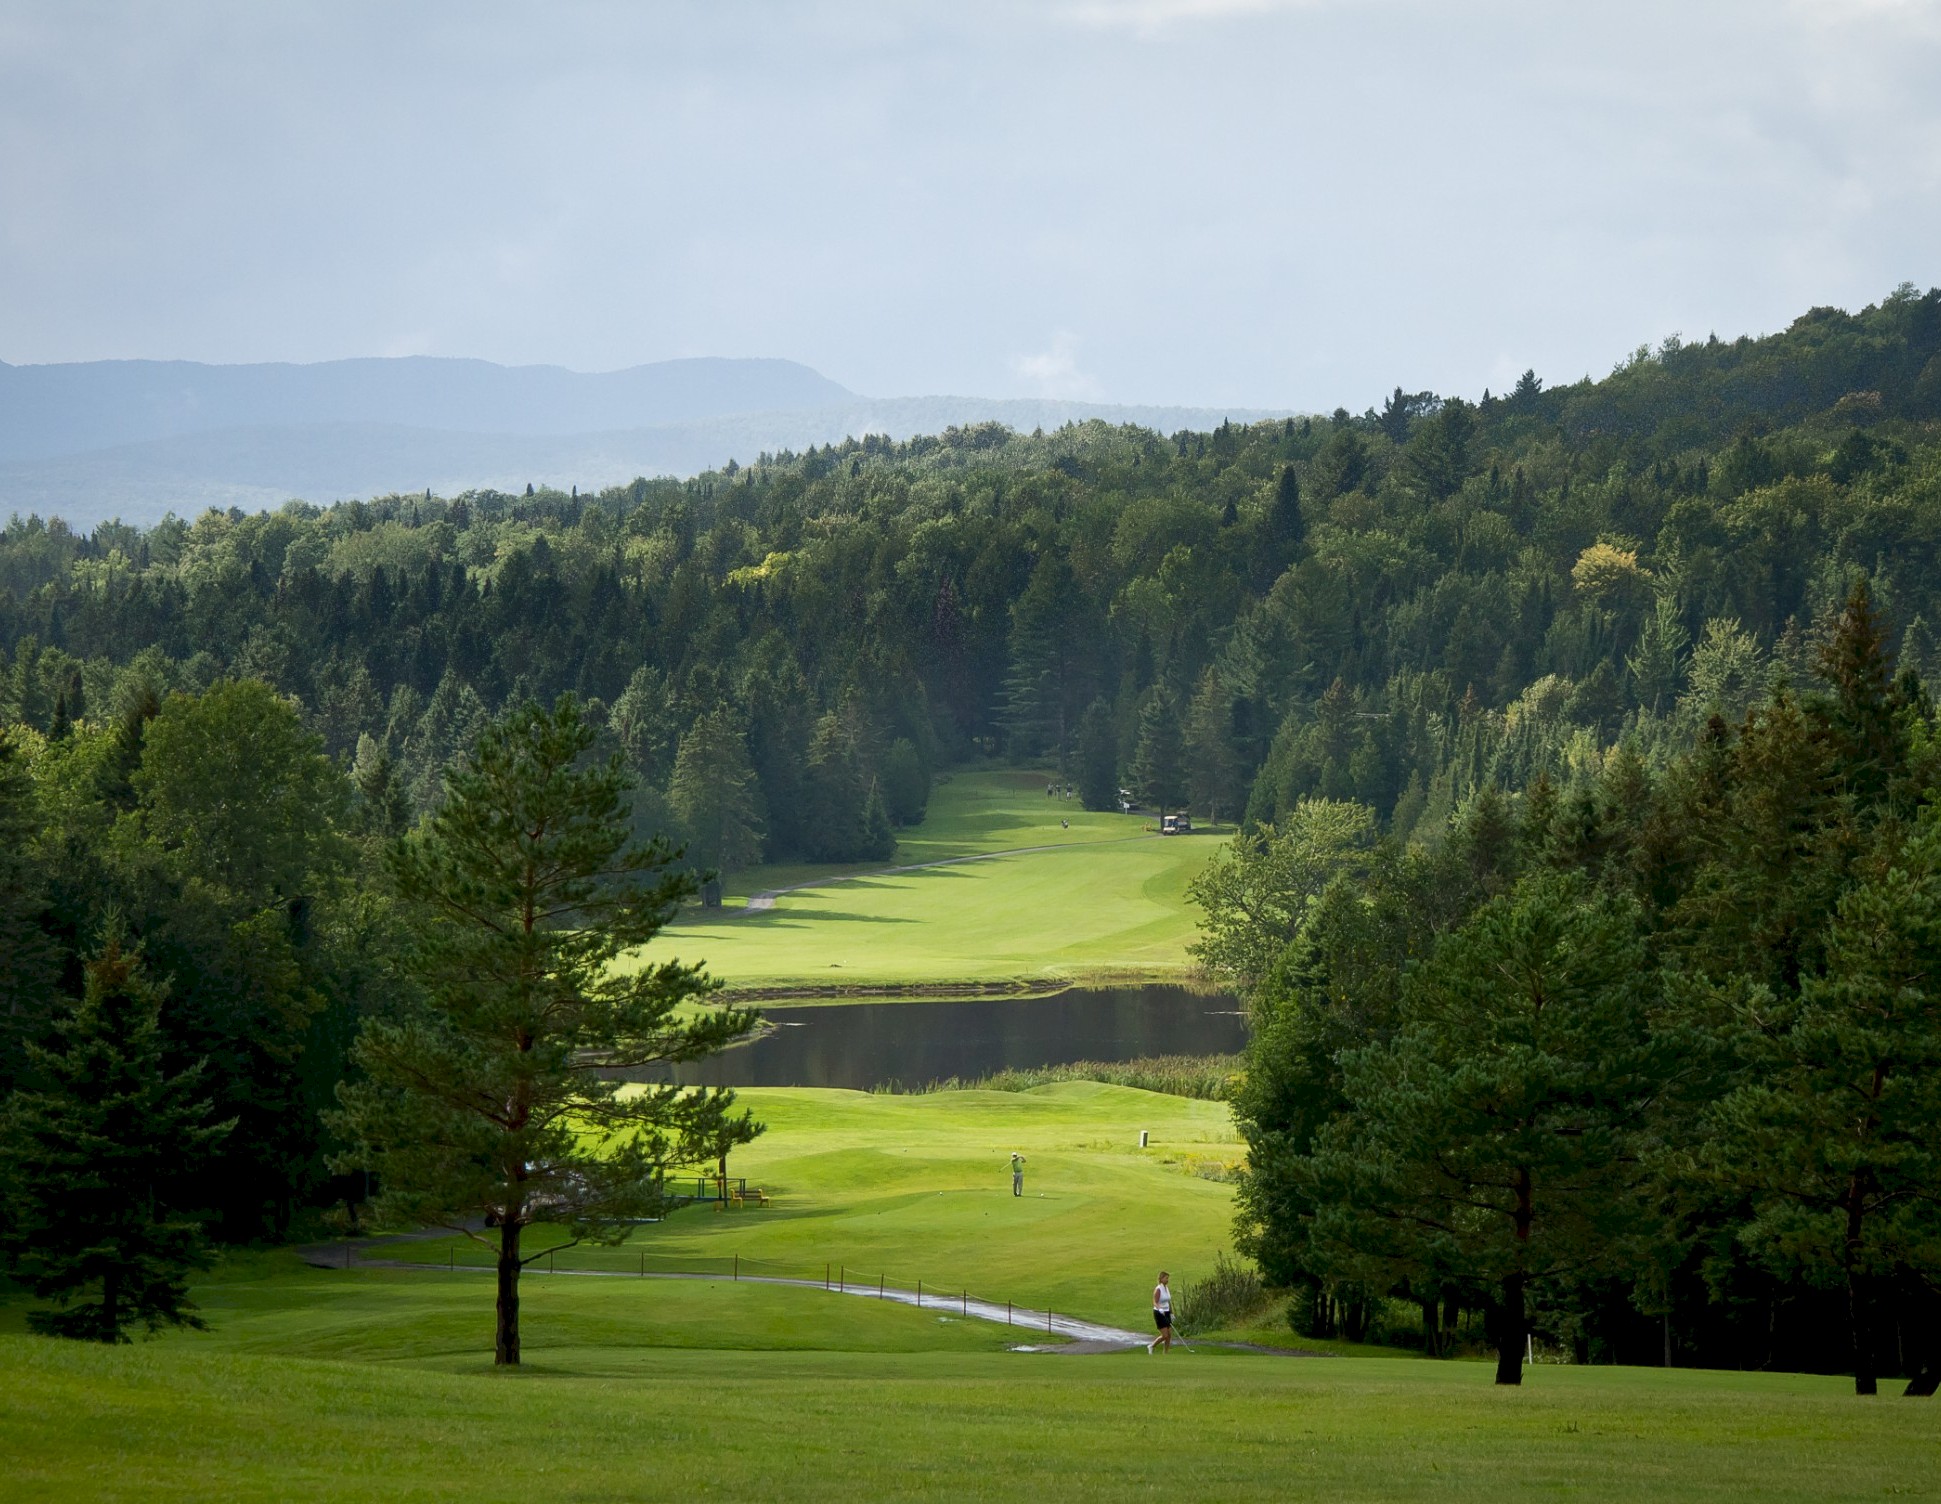 Terrain de golf au cœur des forêts et des montagnes